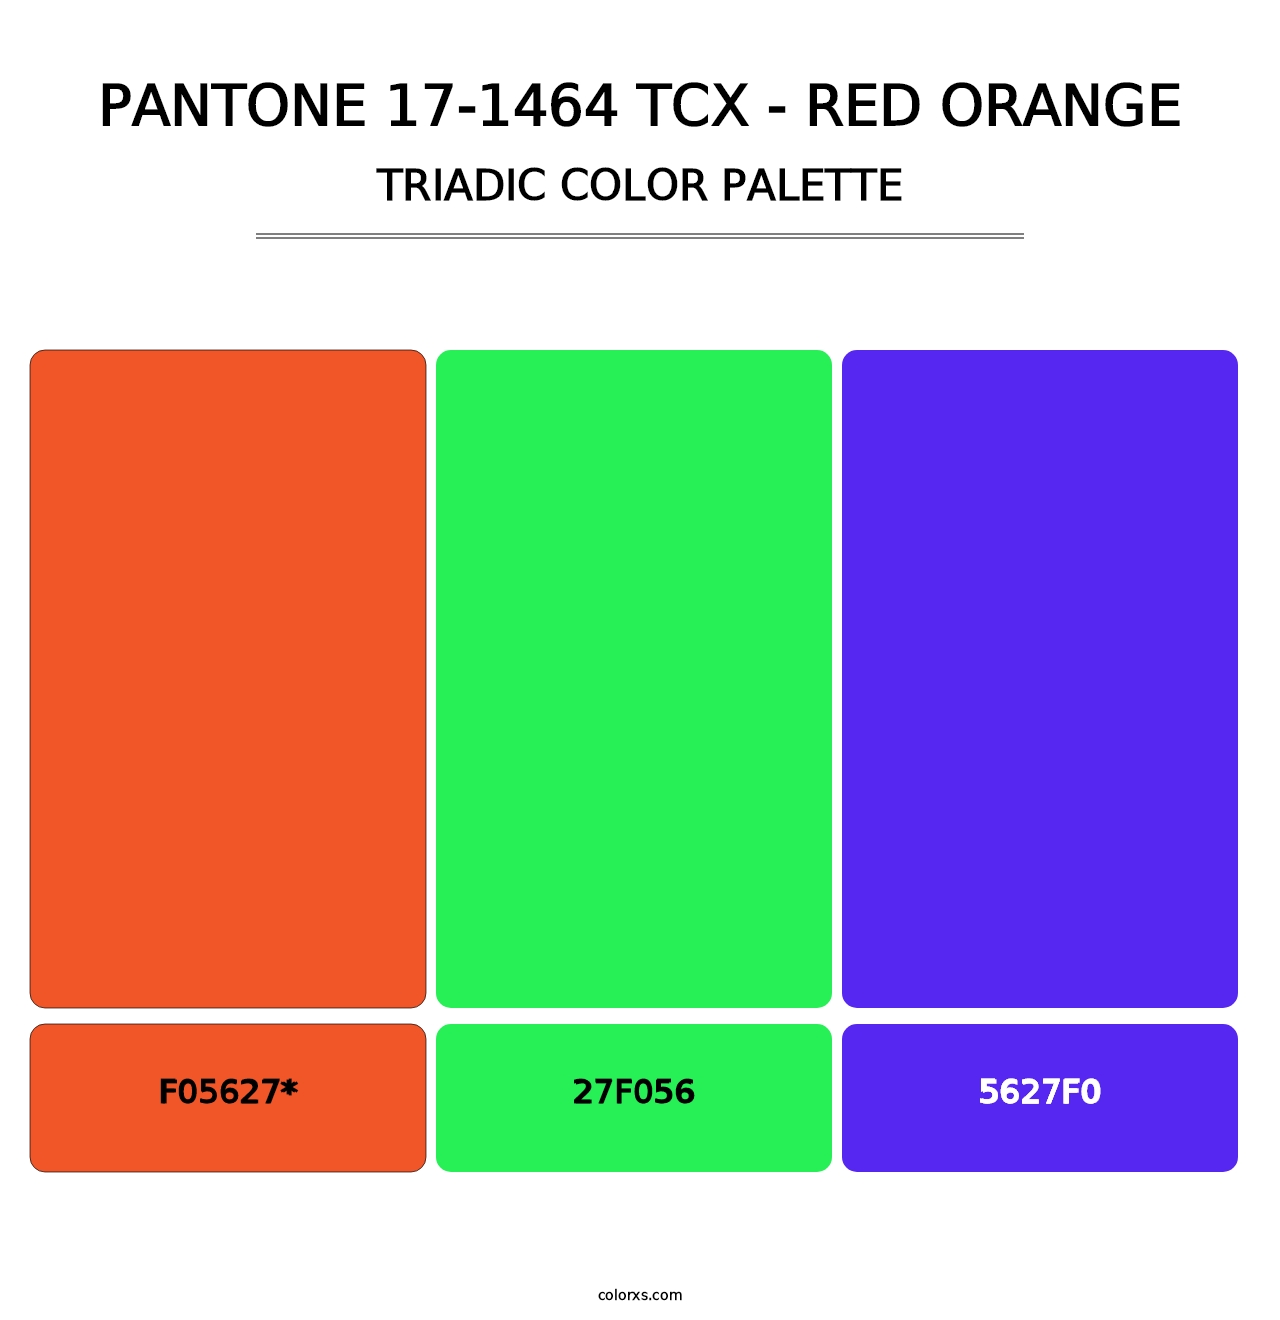 PANTONE 17-1464 TCX - Red Orange - Triadic Color Palette